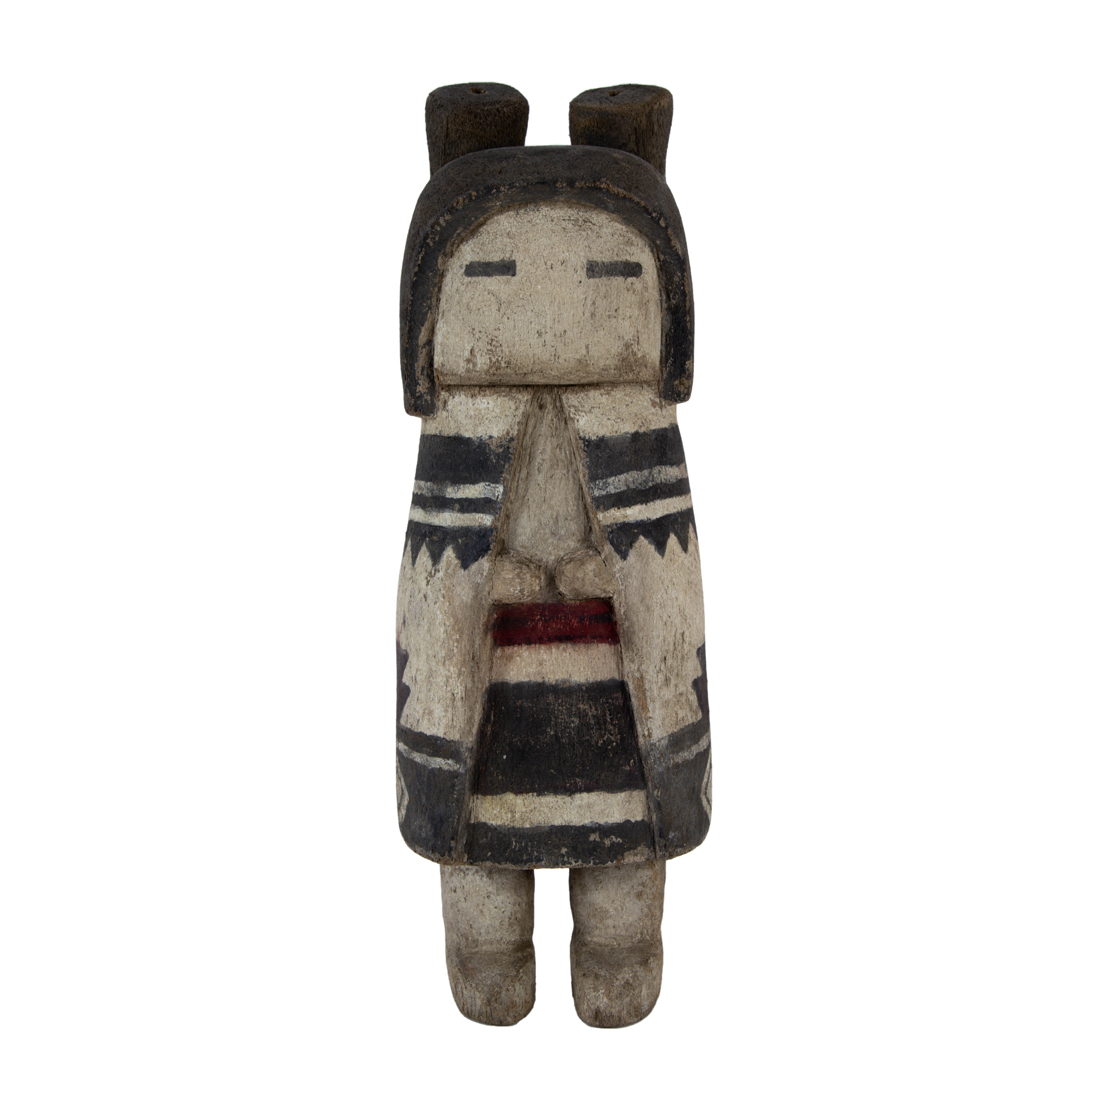 A HOPI KACHINA DOLL A Hopi kachina doll,